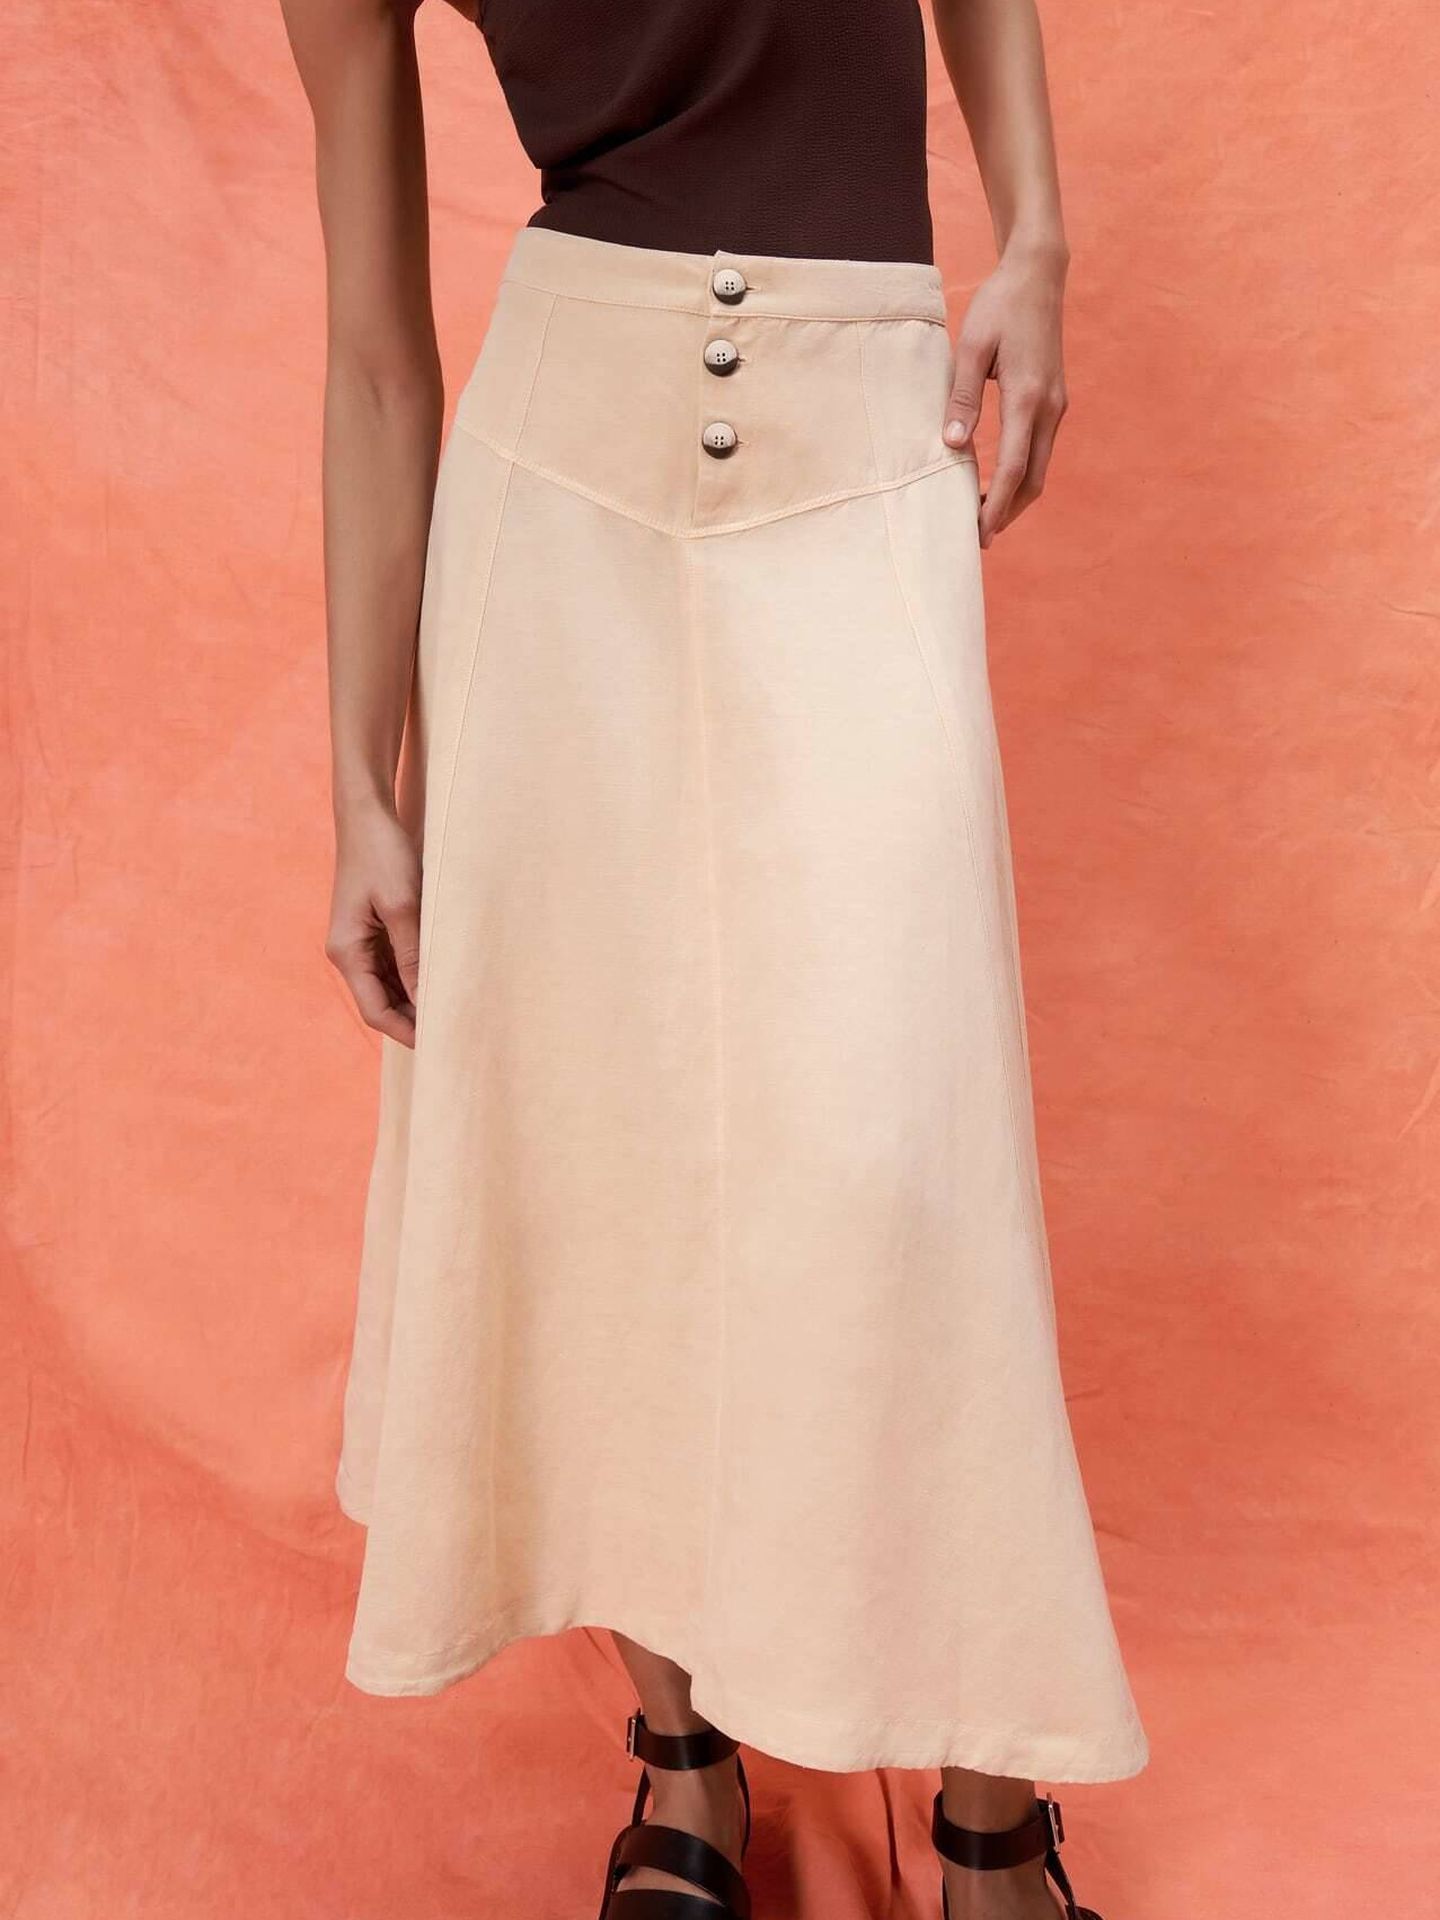 La falda midi de Zara. (Cortesía)